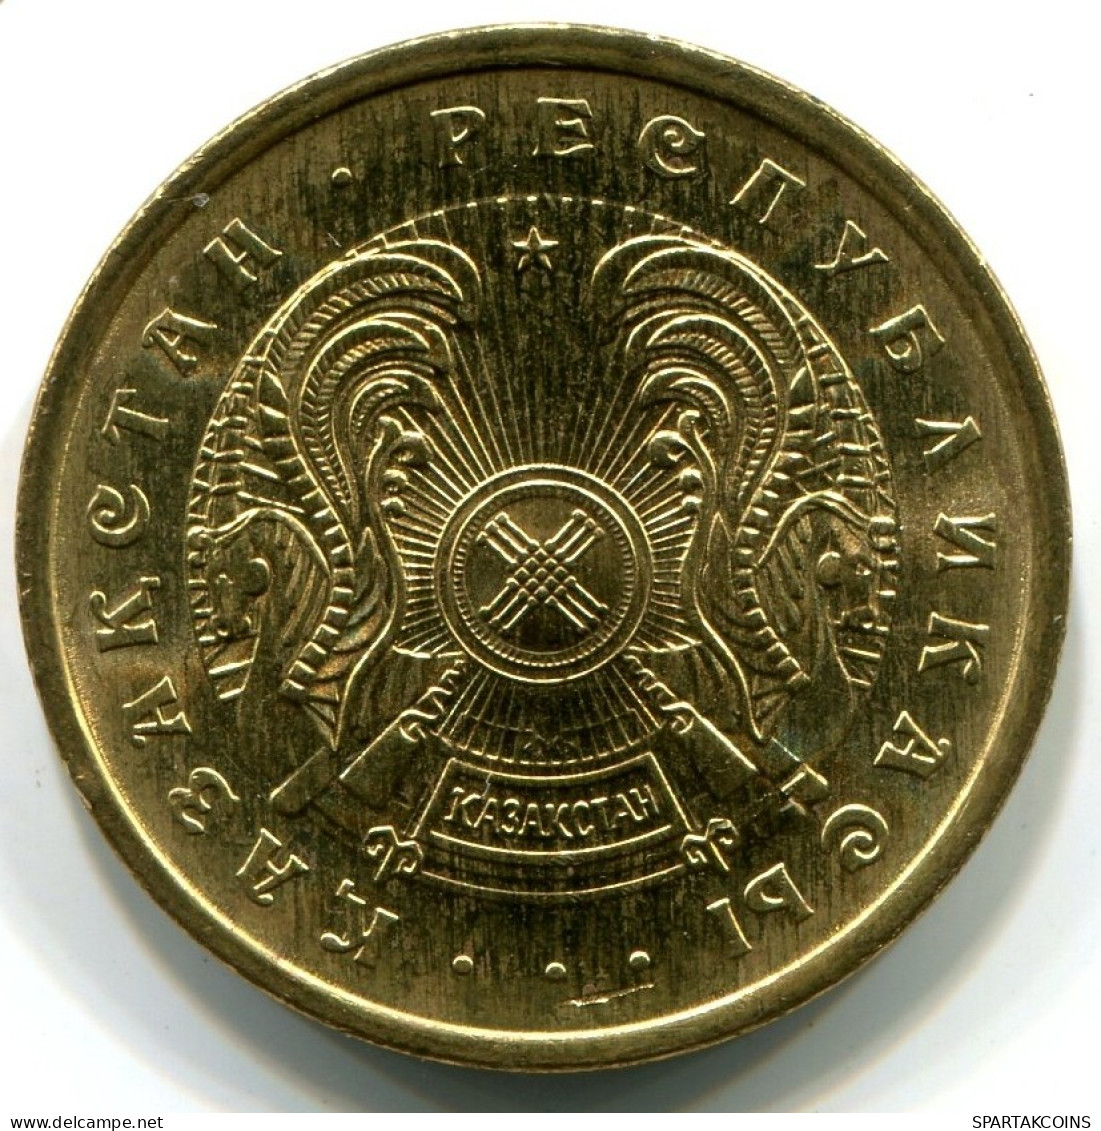 50 TIYN 1993 KAZAKHSTAN UNC Coin #5 #W11173.U.A - Kazajstán